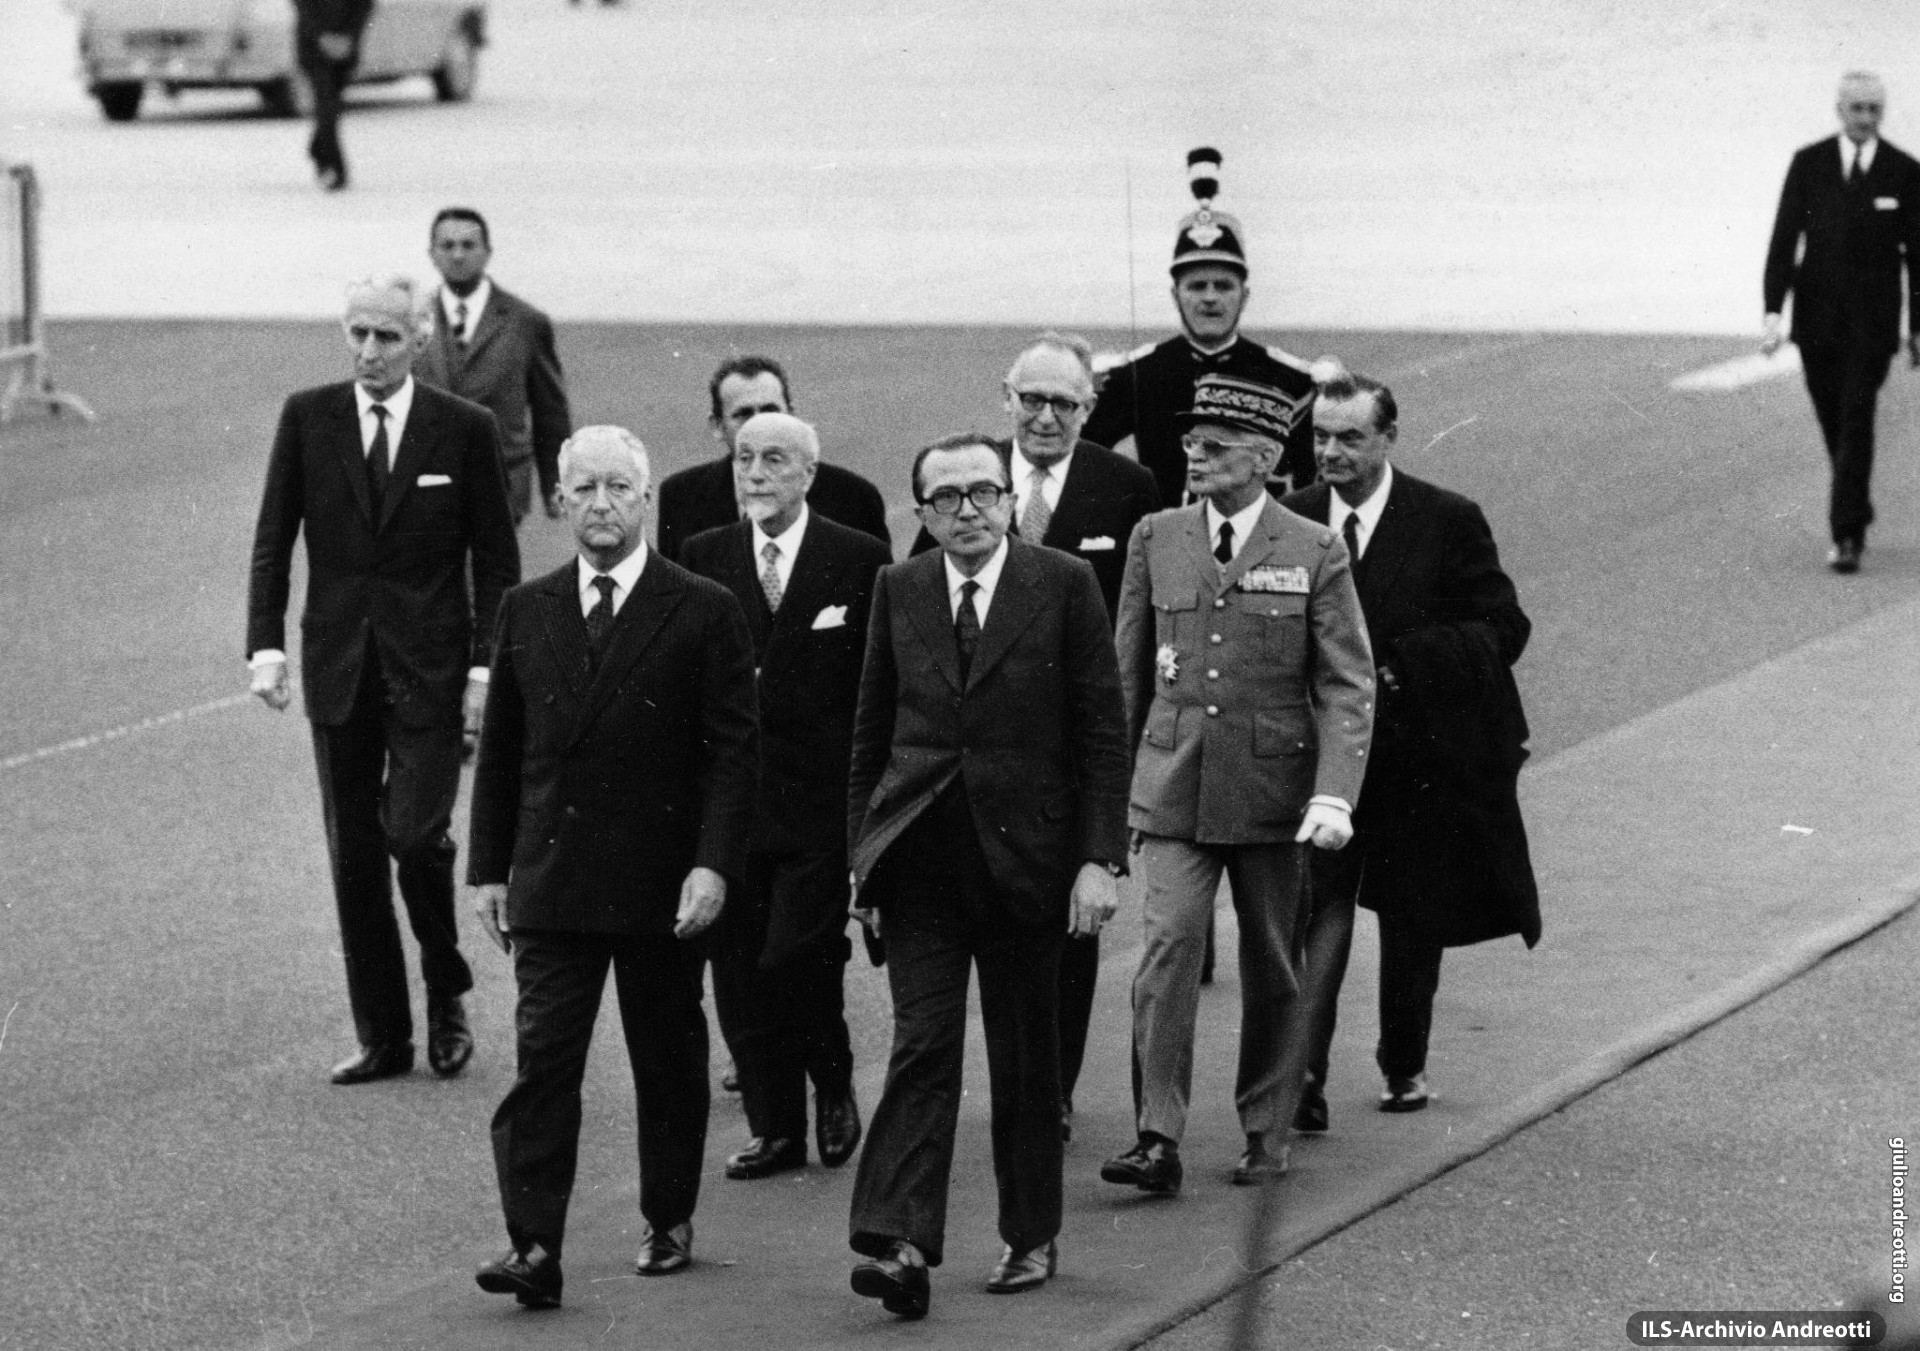 Ottobre 1972. Il Presidente del Consiglio Andreotti a Parigi per partecipare al Consiglio europeo, il primo con nove Paesi partecipanti. Con lui, il Ministro degli Esteri Giuseppe Medici e il Ministro del Tesoro Giovanni Malagodi.